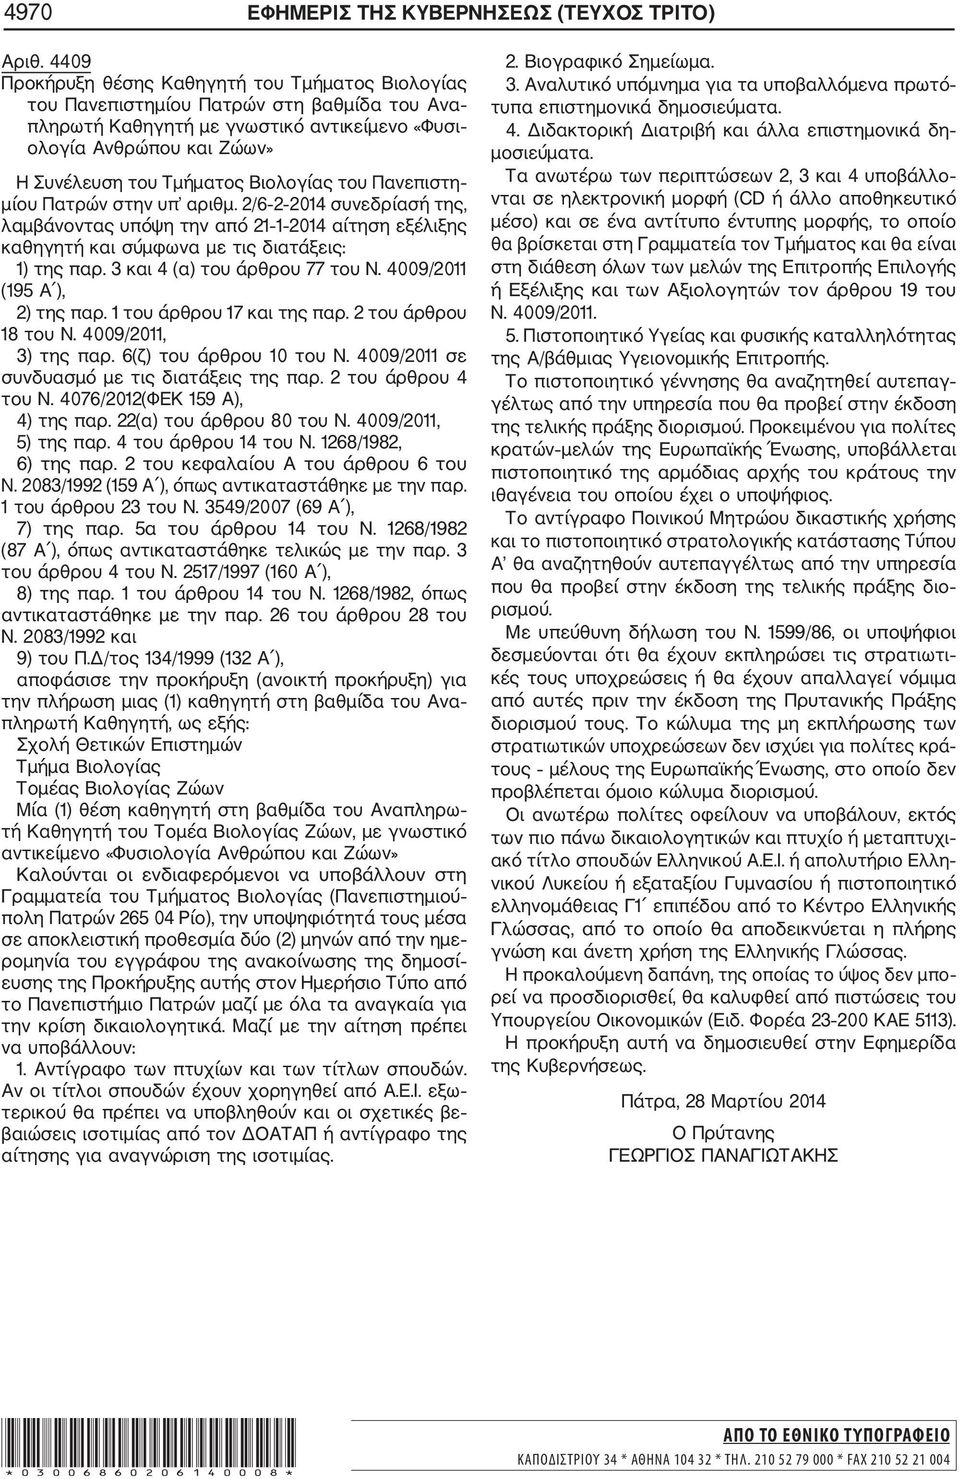 Βιολογίας του Πανεπιστη μίου Πατρών στην υπ αριθμ. 2/6 2 2014 συνεδρίασή της, λαμβάνοντας υπόψη την από 21 1 2014 αίτηση εξέλιξης καθηγητή και σύμφωνα με τις διατάξεις: 1) της παρ.